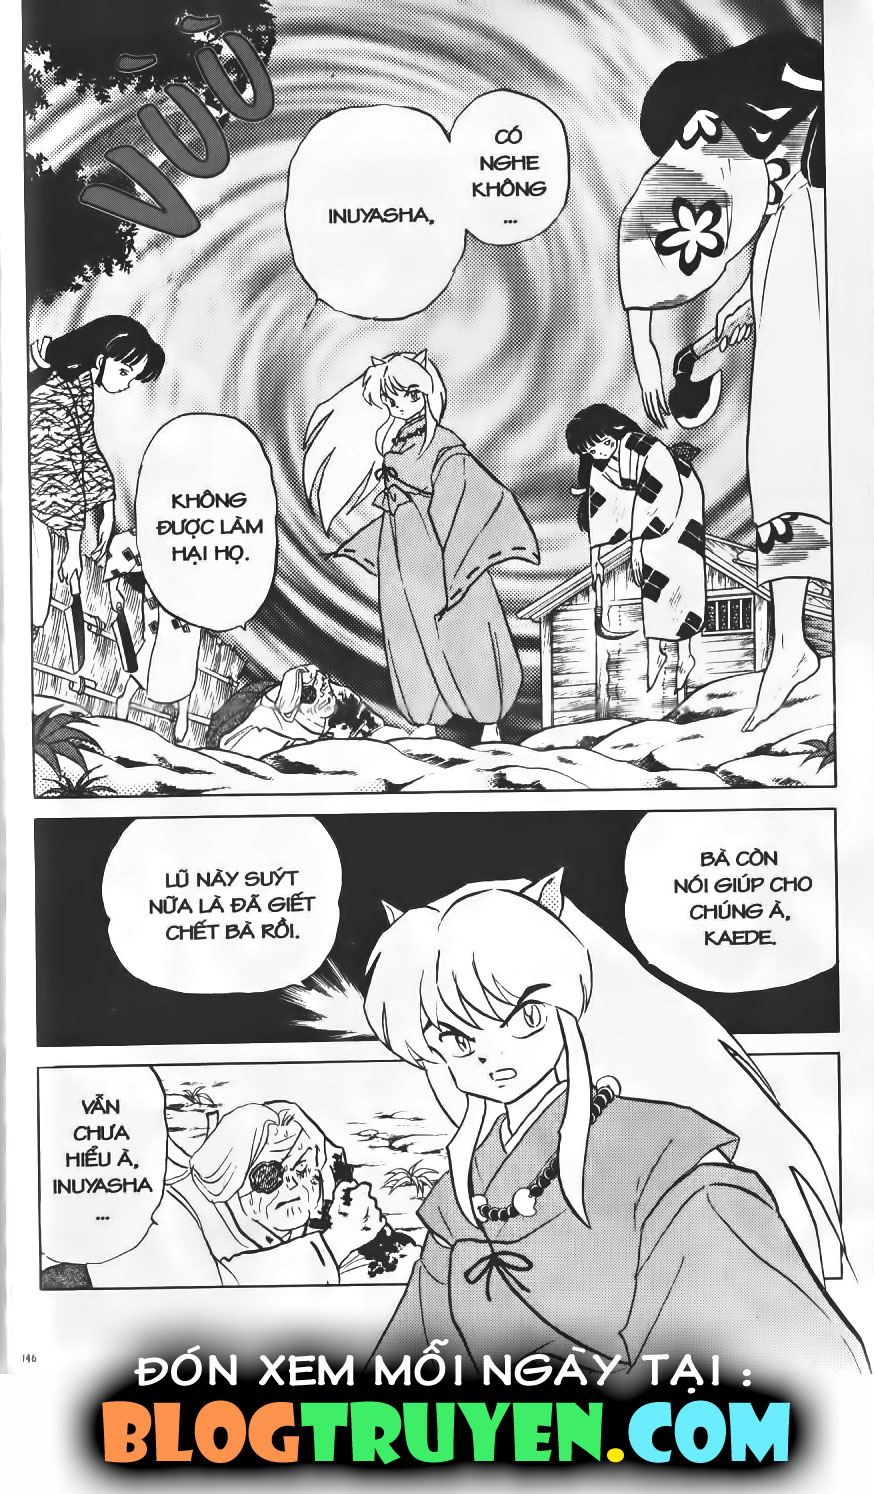 Inuyasha vol 01.7 trang 3